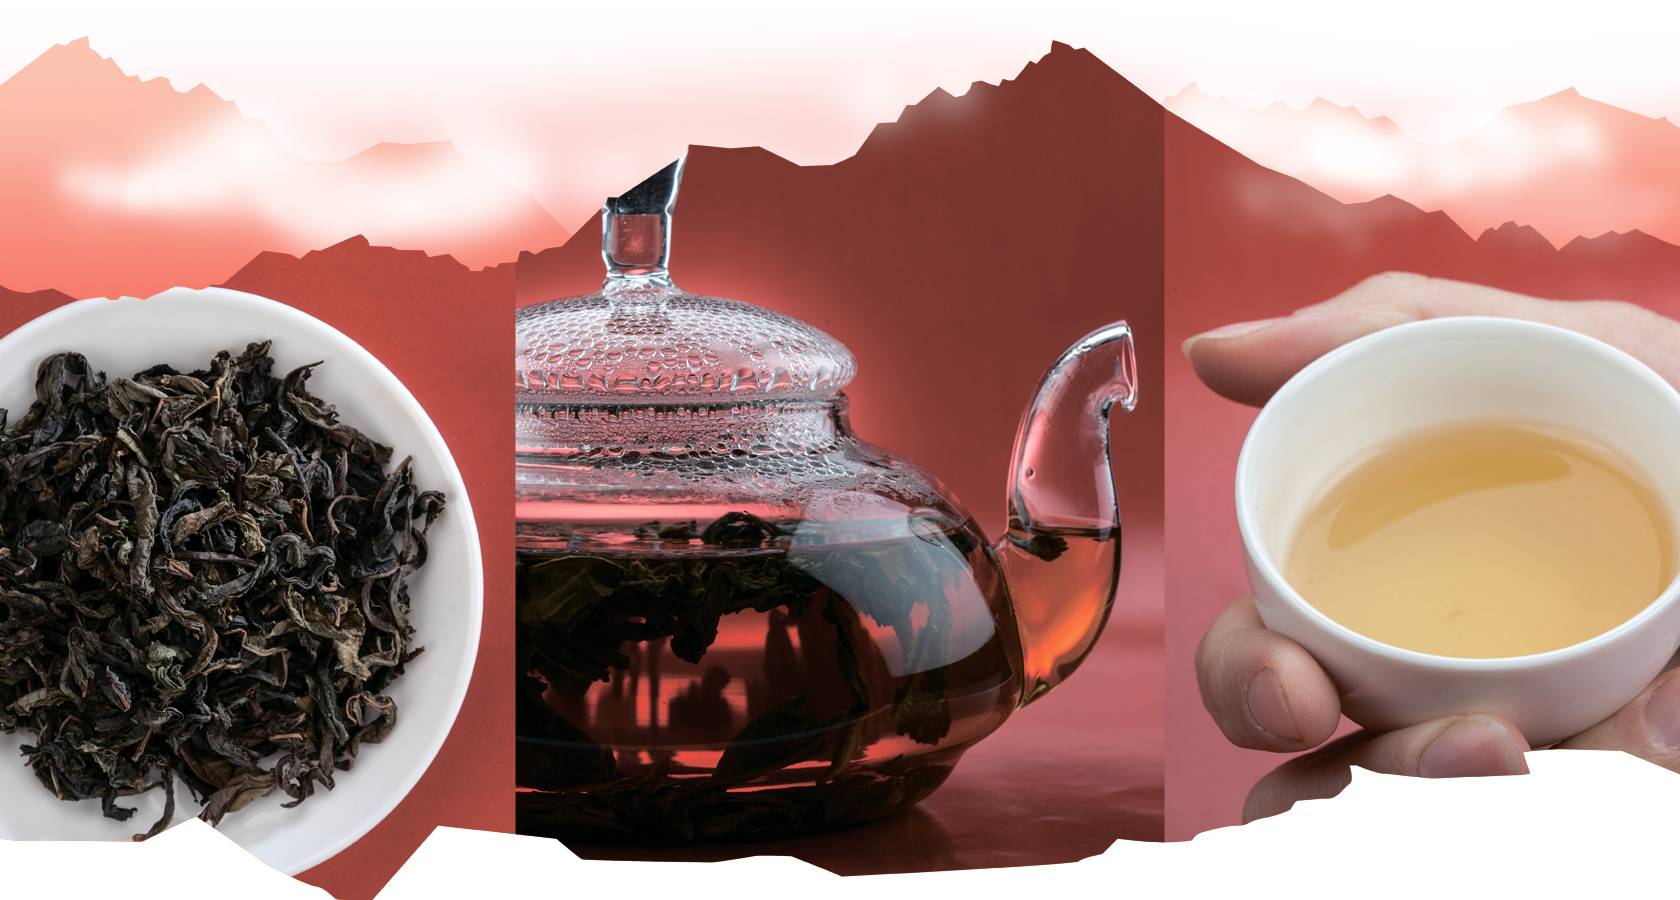 Иван-чай: лечебные свойства и противопоказания